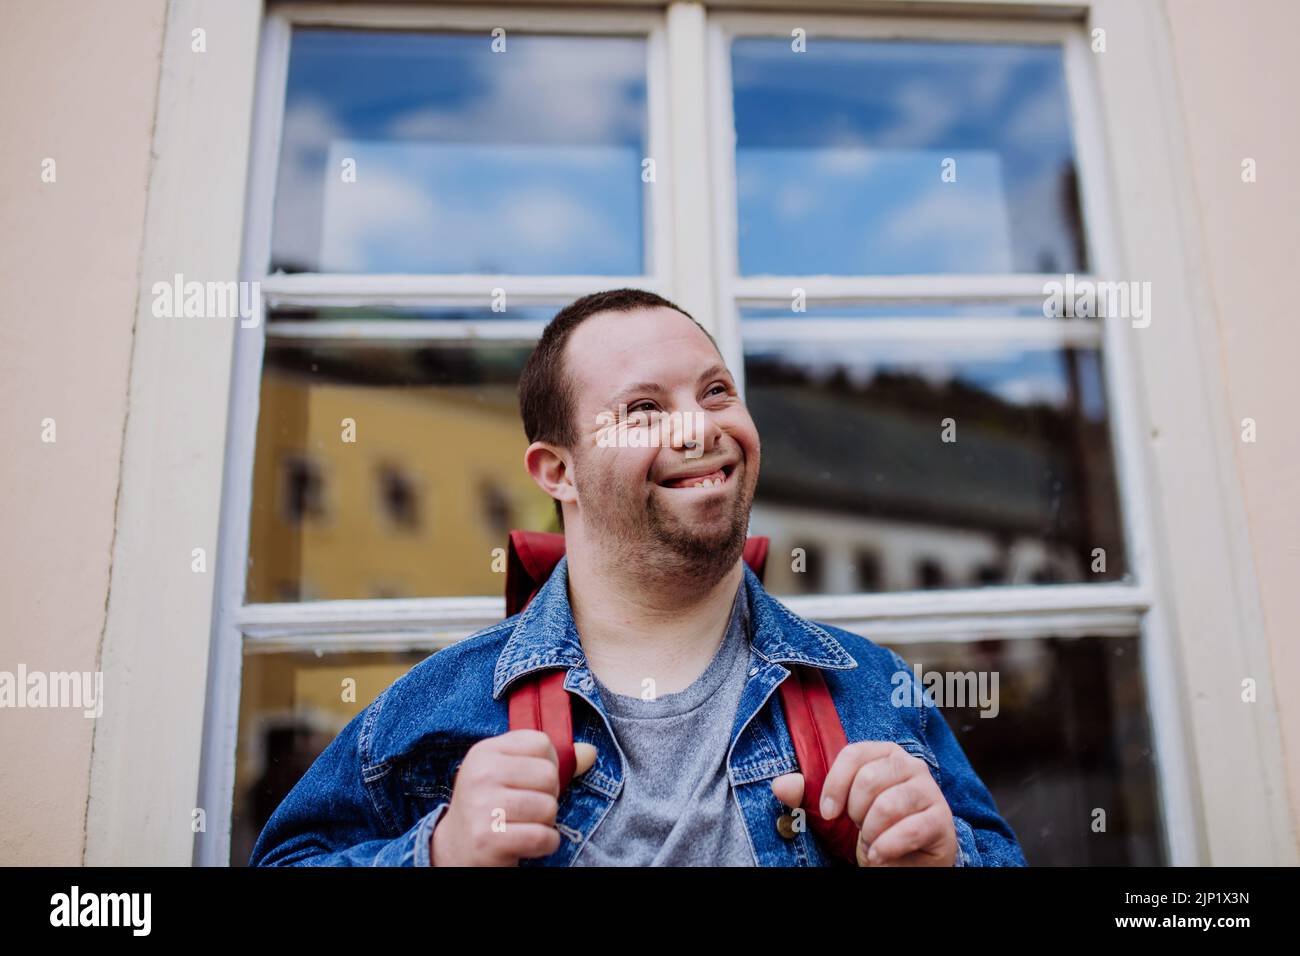 Retrato del joven feliz con sidrome de Down con mochila en la calle, sonriendo. Foto de stock